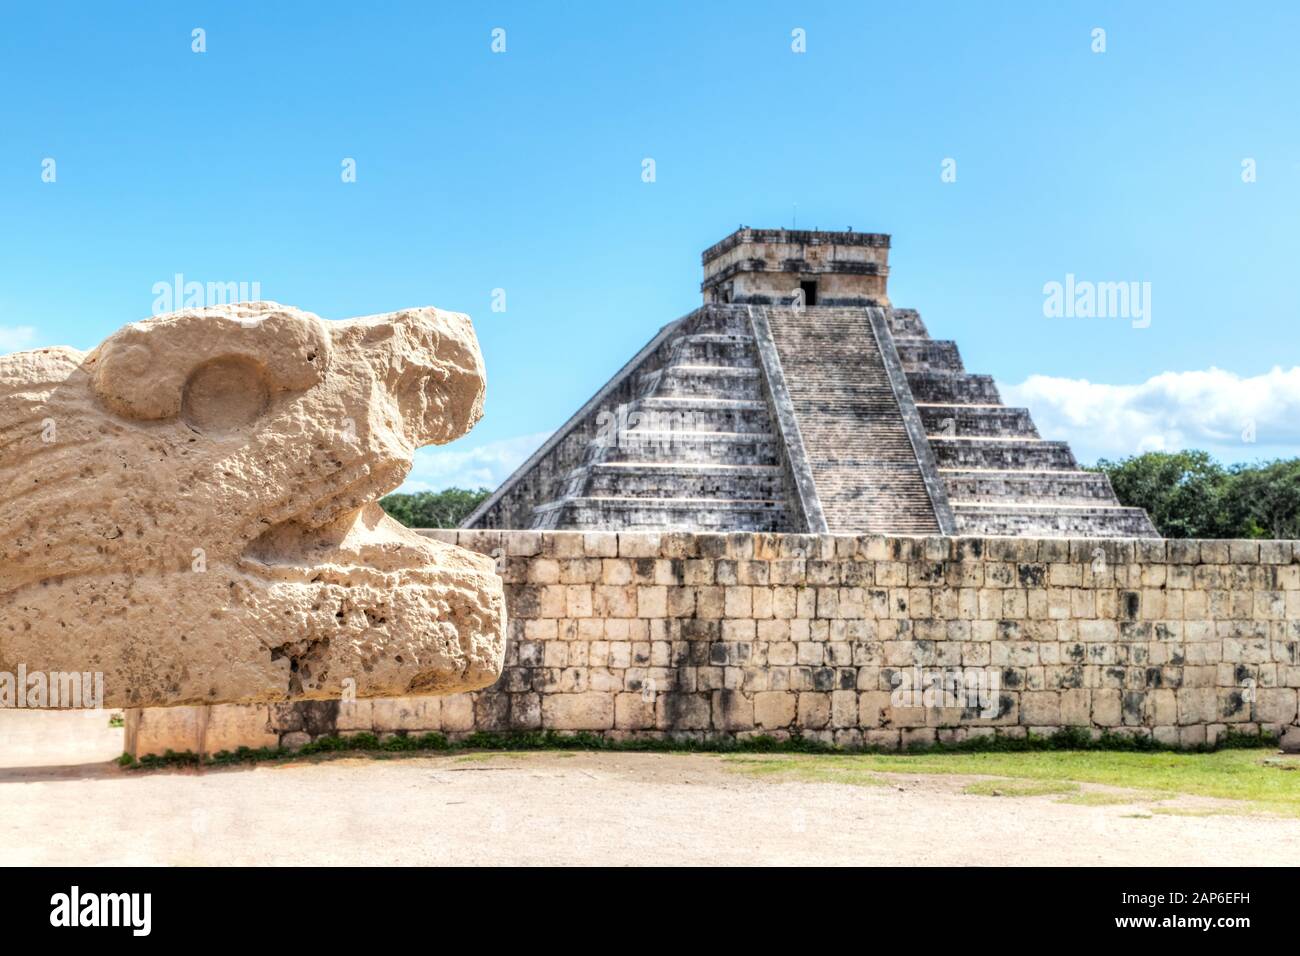 Alte Schlange Skulptur des Mesoamerika Ball Court an der archäologischen Ausgrabungsstätte von Chichén Itzá, ein Weltkulturerbe und einen neuen Sieben Weltwunder. Stockfoto